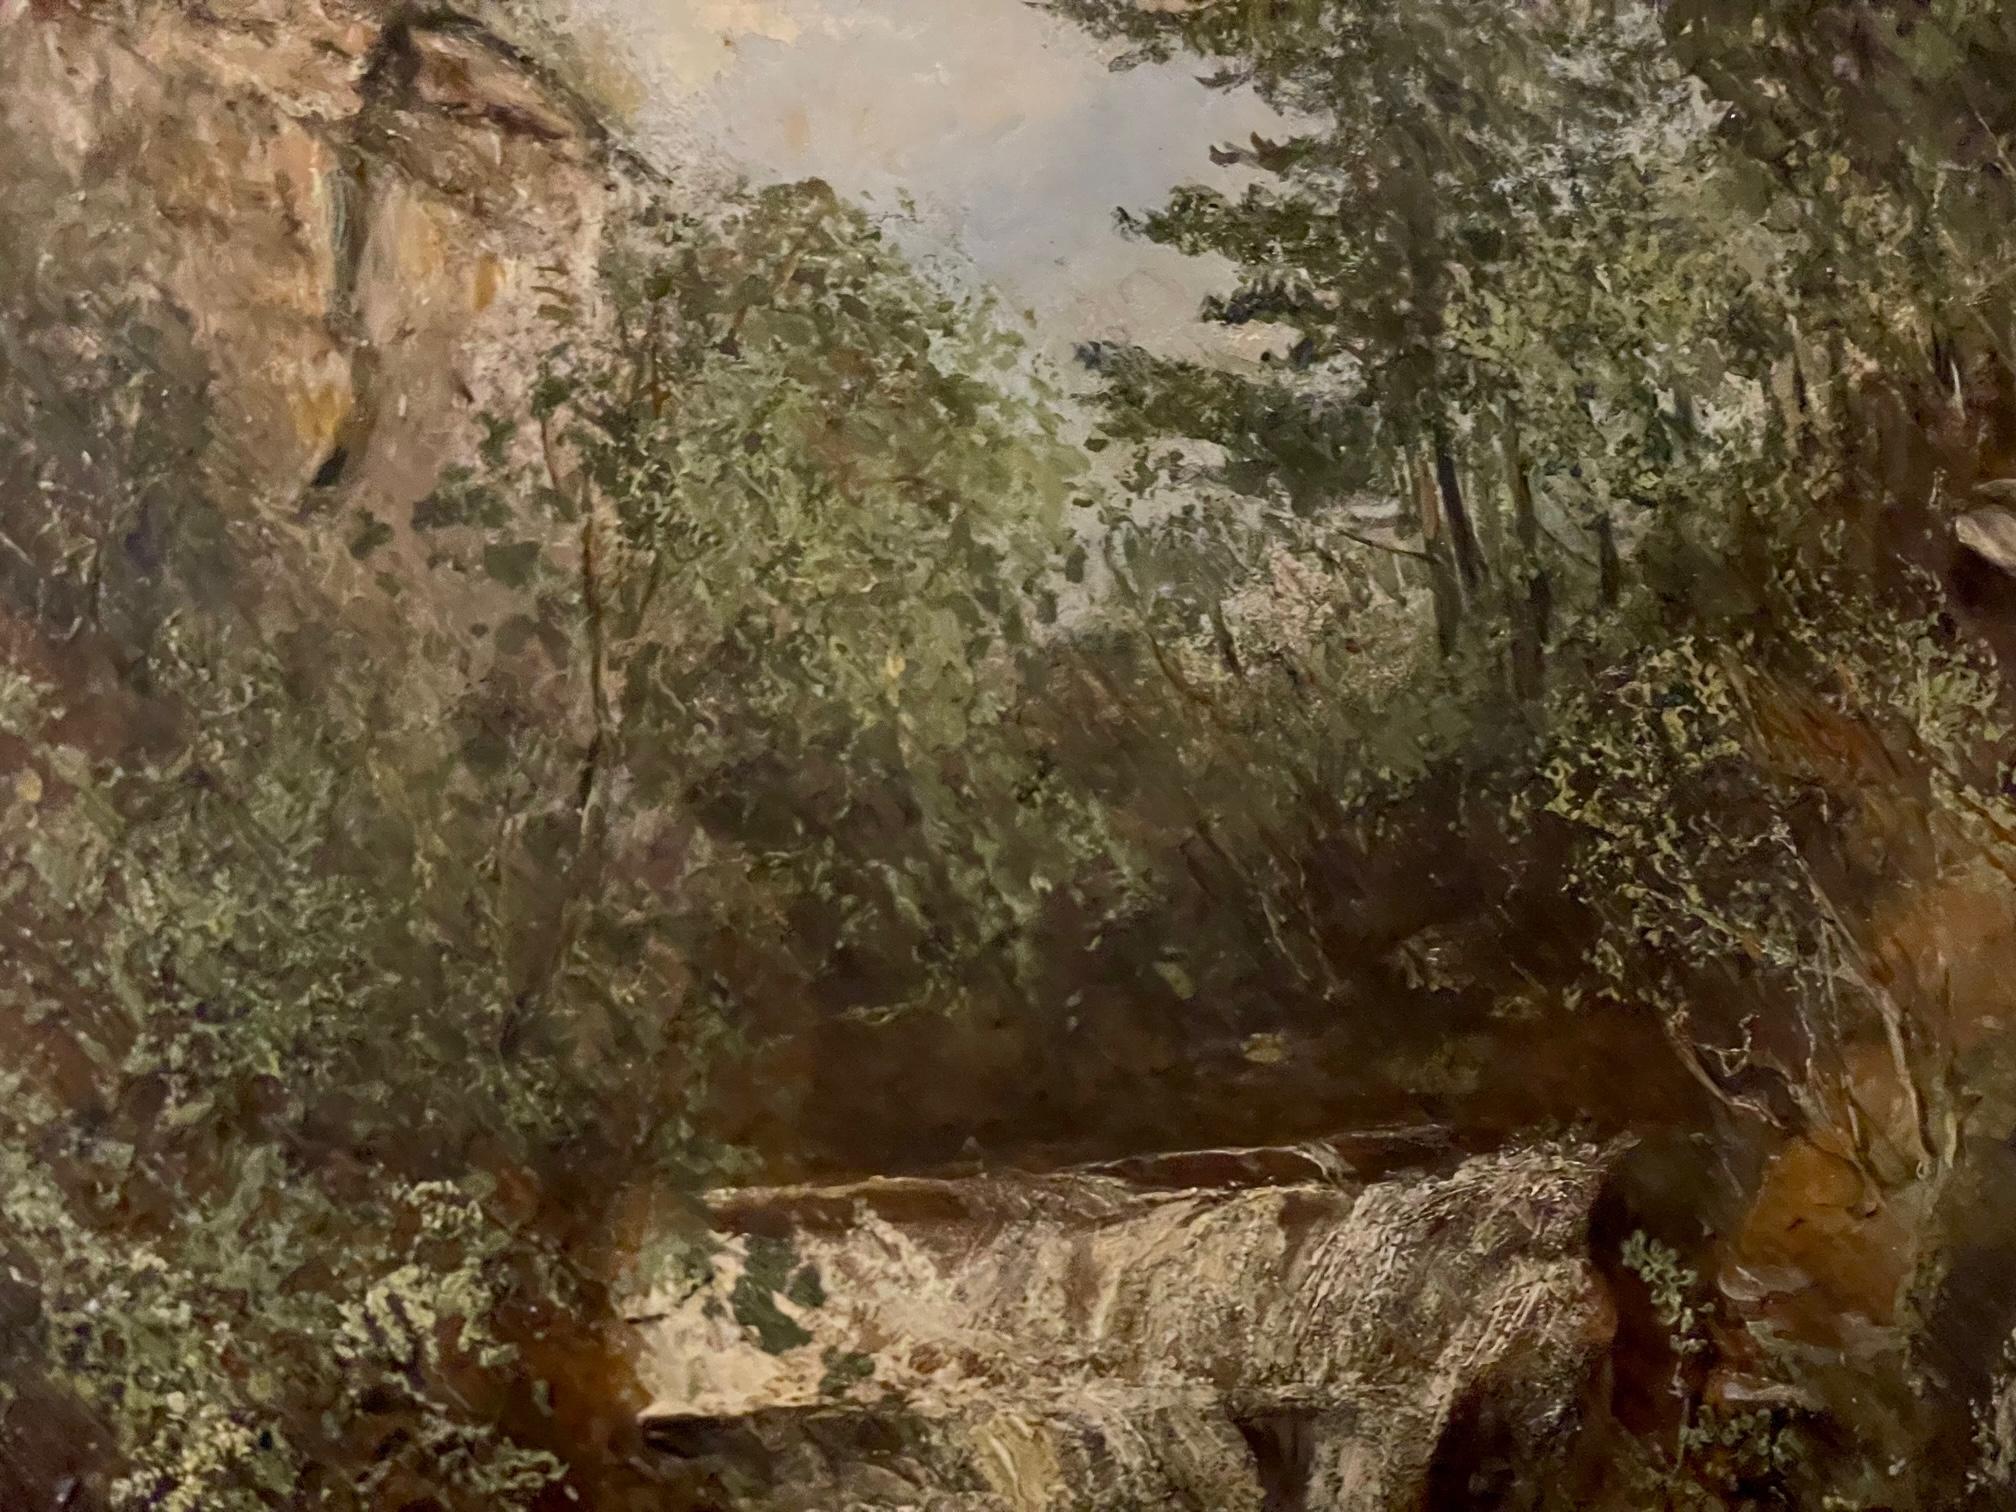 The Old Mill est une peinture à l'huile sur panneau du XIXe siècle réalisée par l'artiste écossais Colin Hunter (1841-1904). Hunter était membre de la Royal Academy, le titre ARA figurant sur la plaque signalétique de cette œuvre. Né à Glasgow,